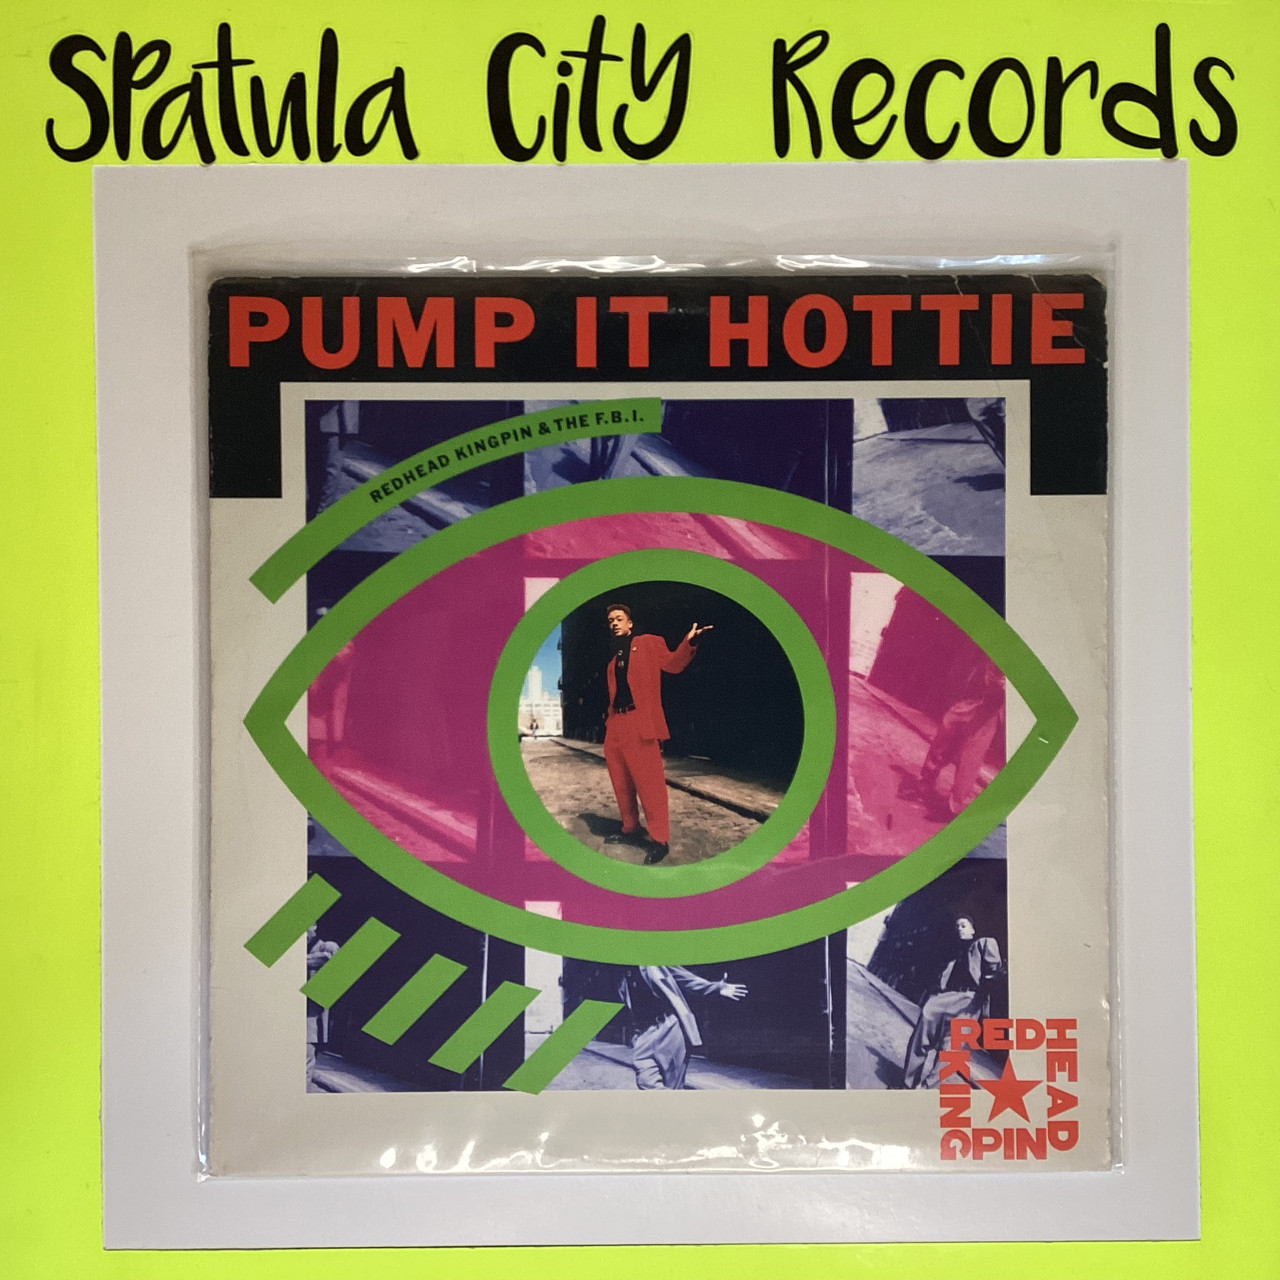 Redhead Kingpin & The F.B.I. – Pump It Hottie - 12" single - vinyl record LP